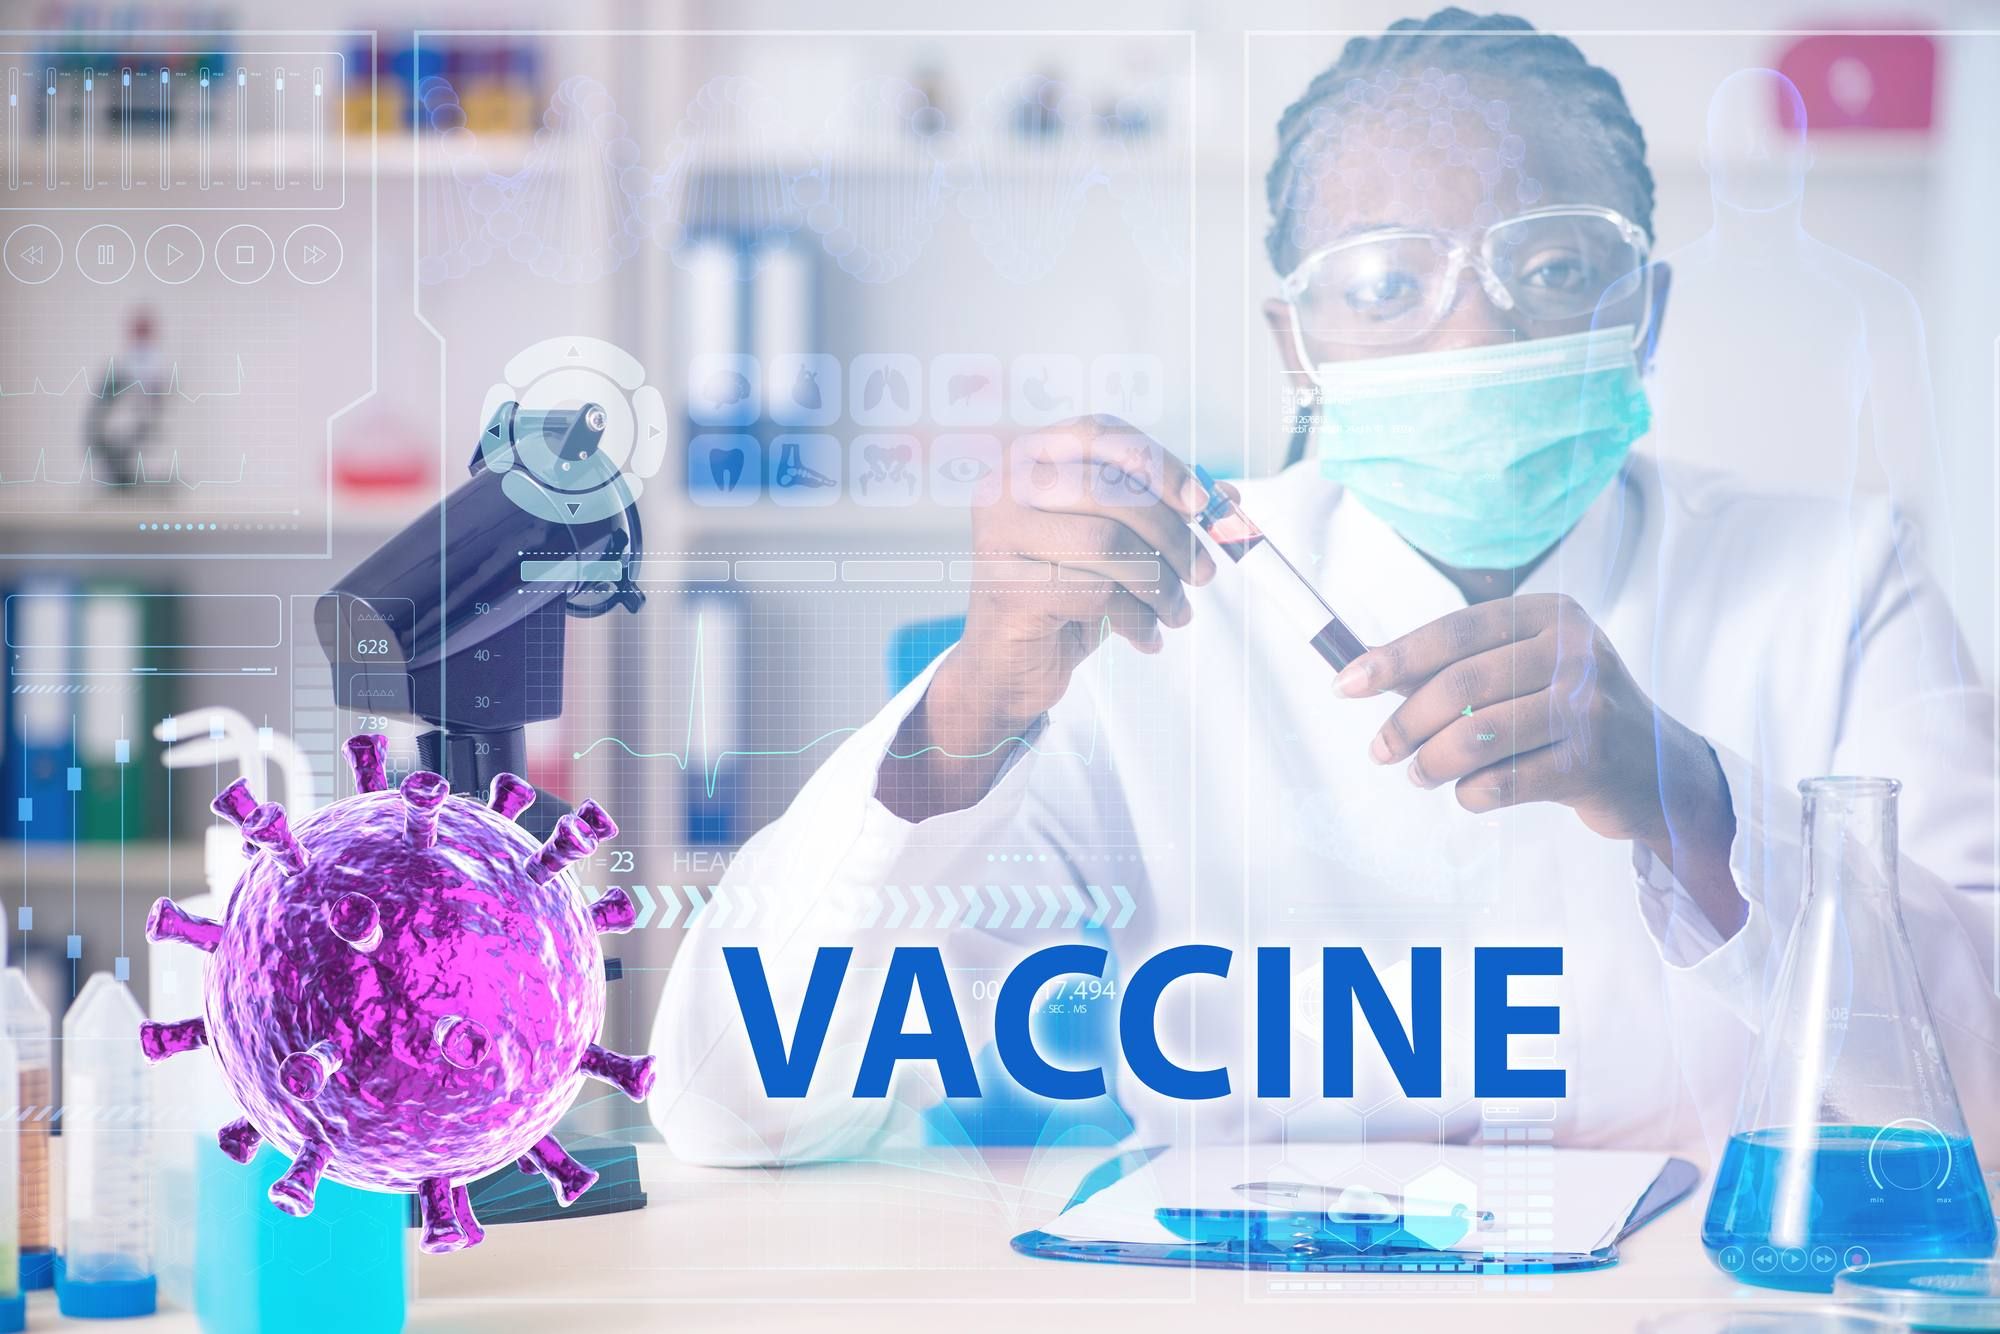 The coronavirus vaccine has been developed.